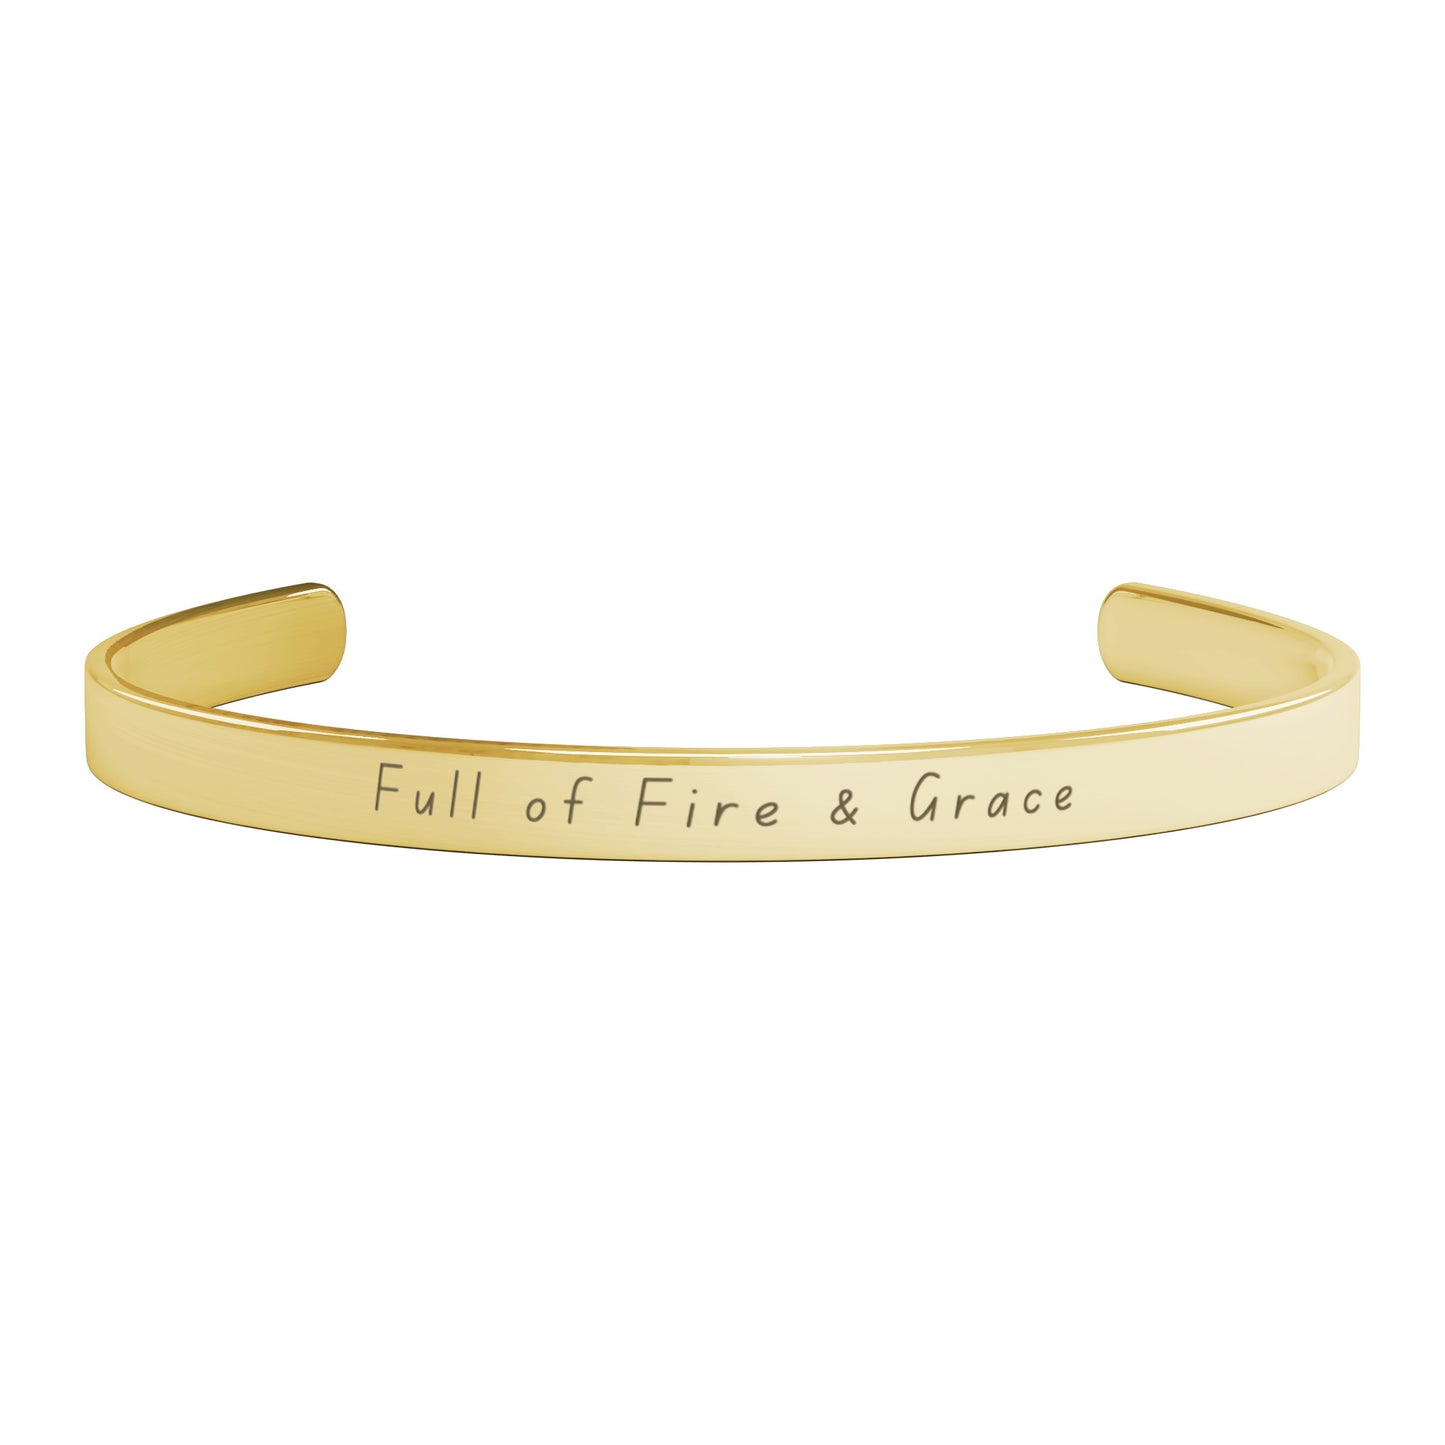 "Full of Fire & Grace" - Cuff Bracelet